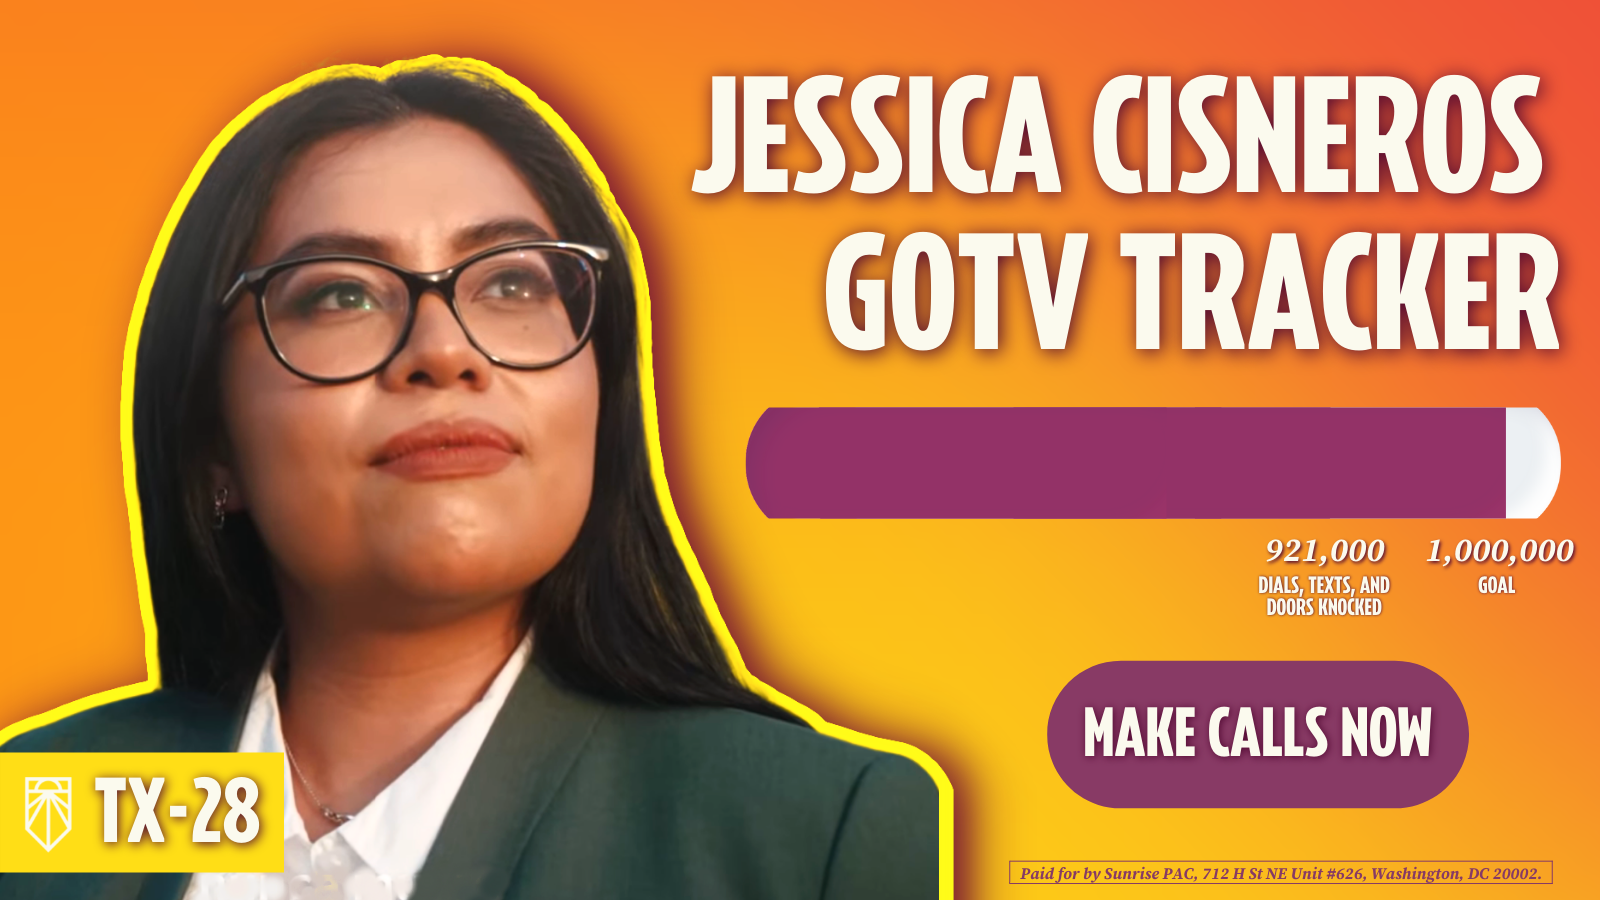 Jessica Cisneros GOTV Tracker - 921,000 pogingen tot kiezerscontacten, 1,000,000 doel - Bellen. Betaald door Sunrise PAC, 712 H St NE Unit #626, Washington, DC 20002.